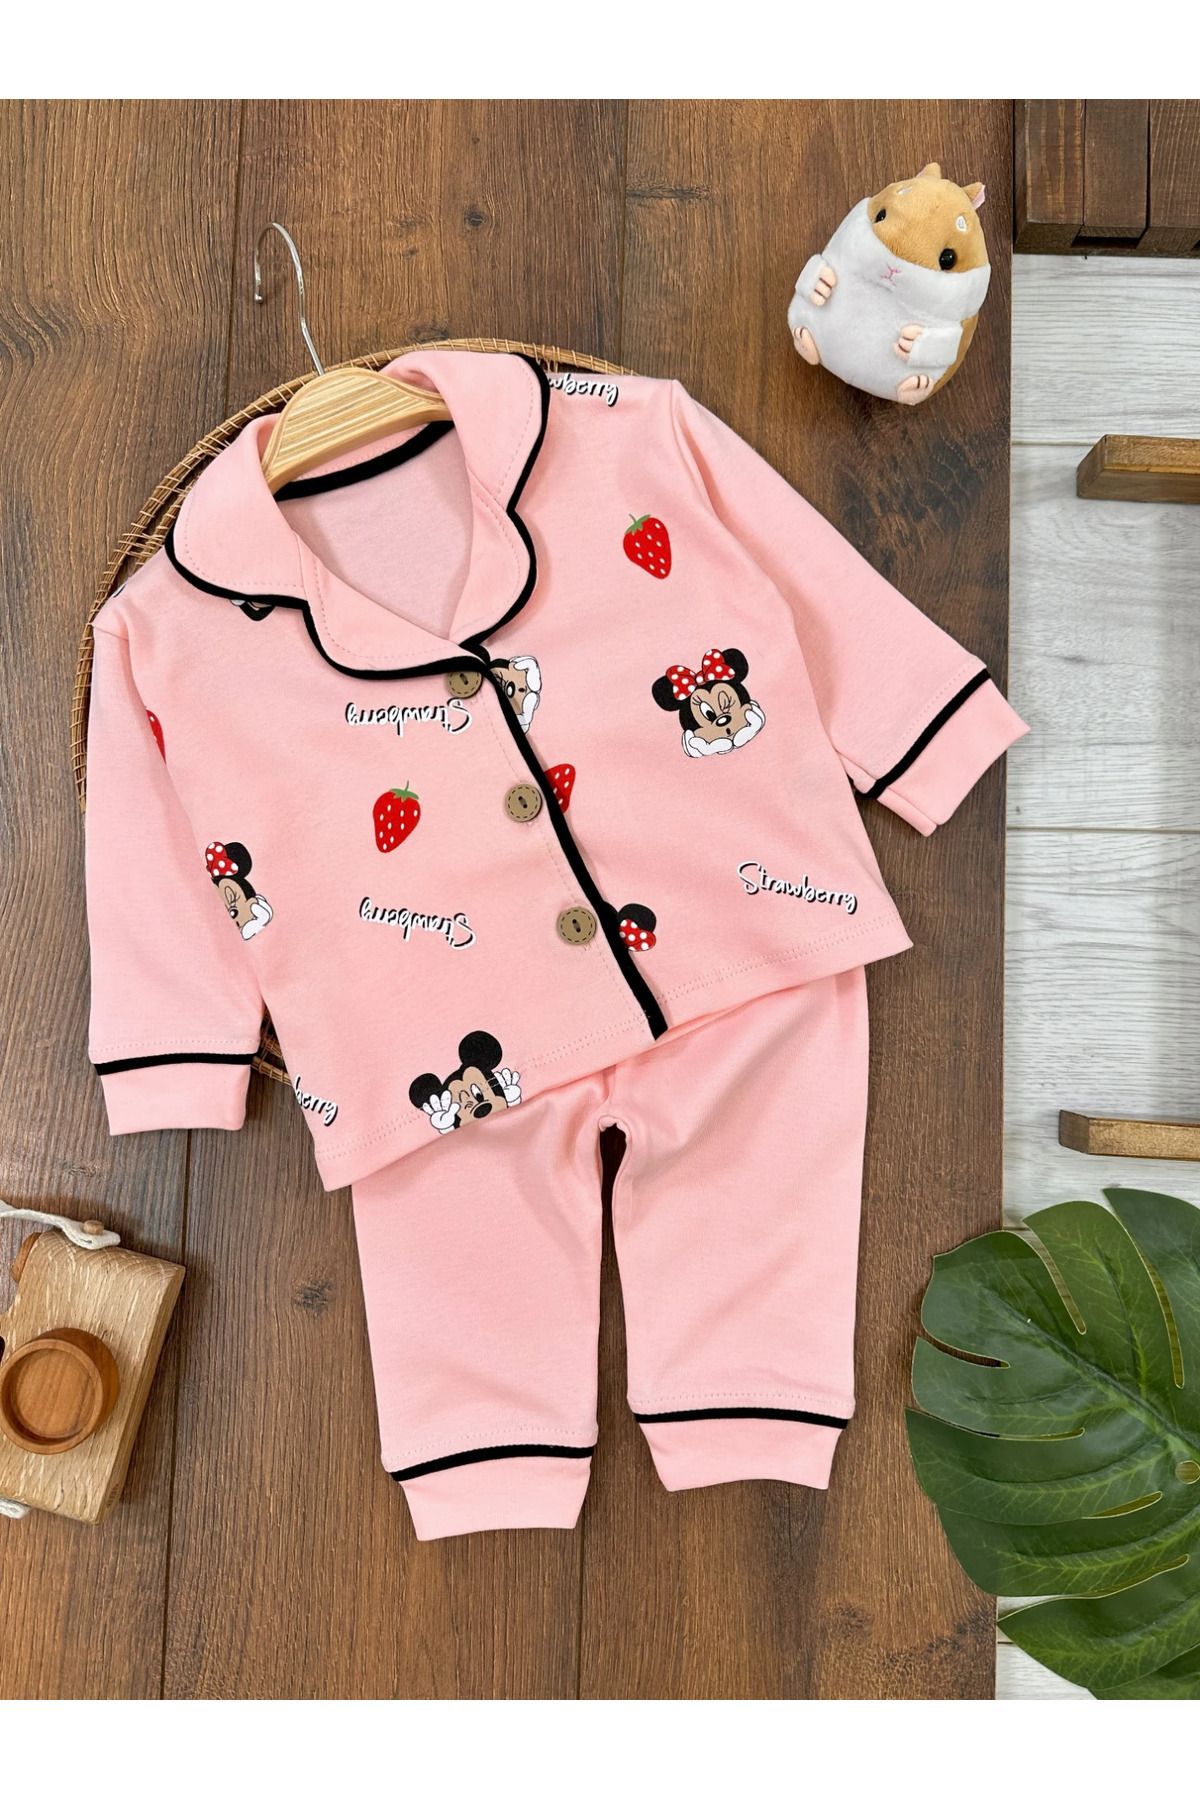 Babexi Bebek Pijama Takımı Pamuk Yumuşak Doku Kruvaze Yaka Kız Bebek Pijama